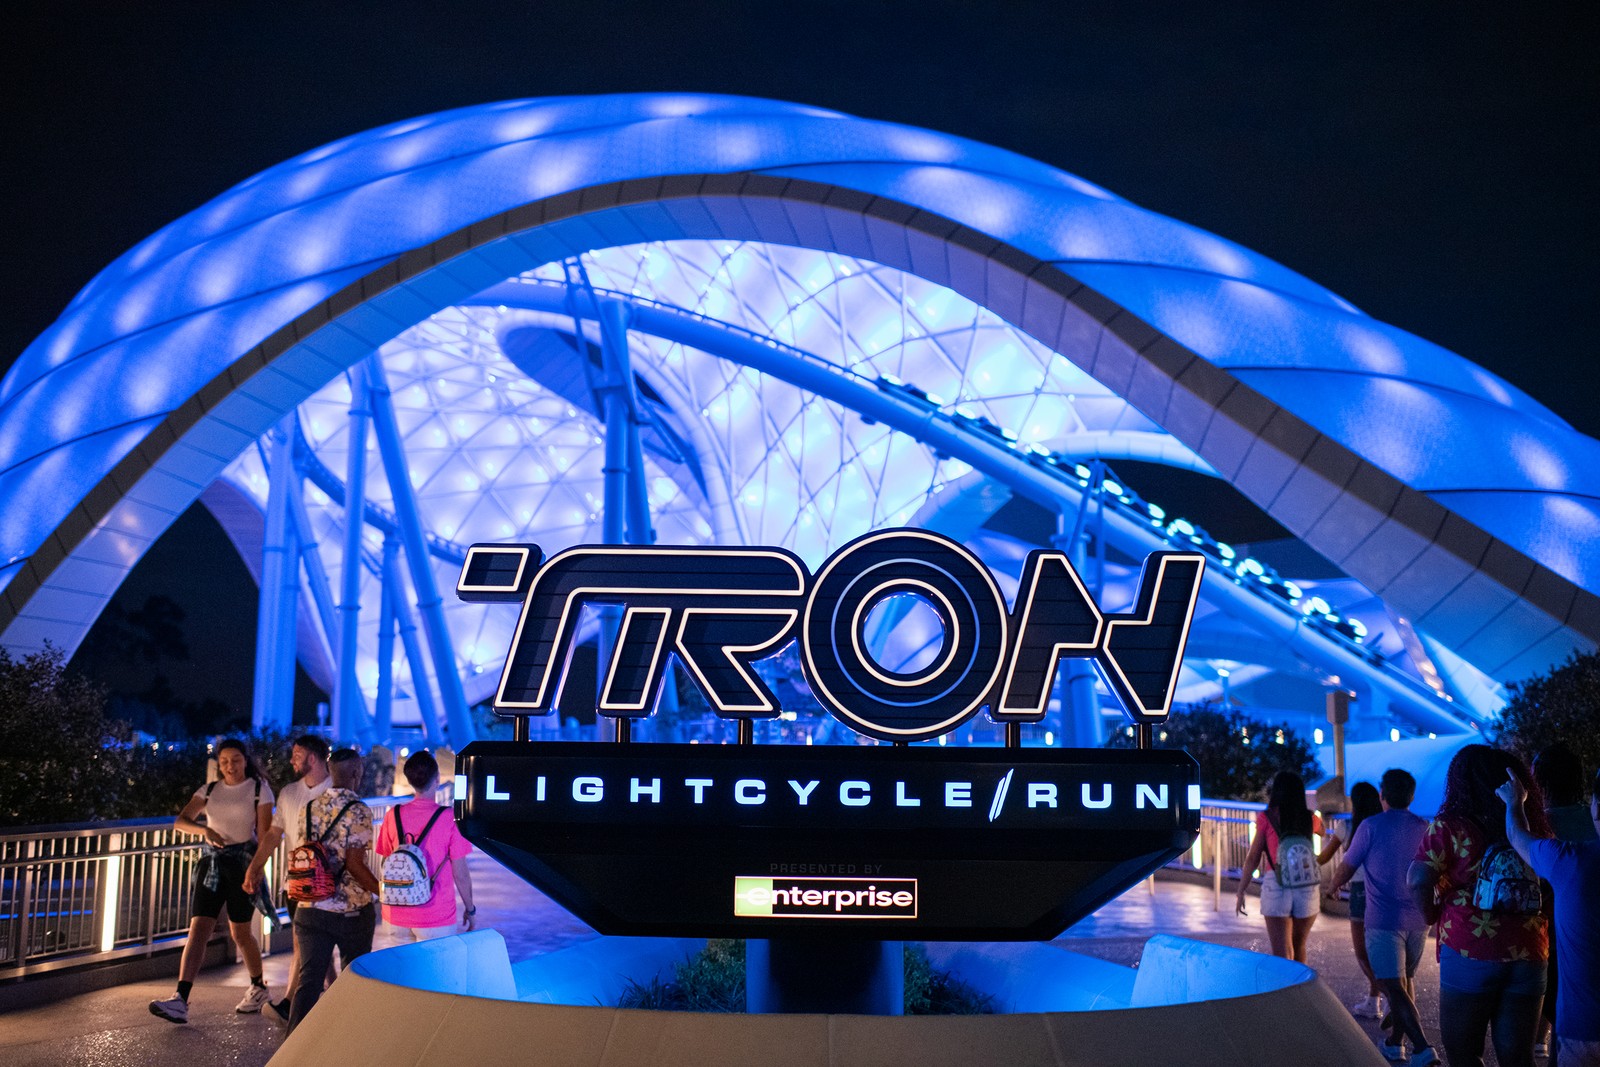 Ocupando uma área de 40 mil metros quadrados na área Tomorrowland, a montanha-russa Tron Lightcycle / Run é a maior expansão do Magic Kingdom desde a New Fantasyland, em 2012 — Foto: Divulgação / Disney Parks